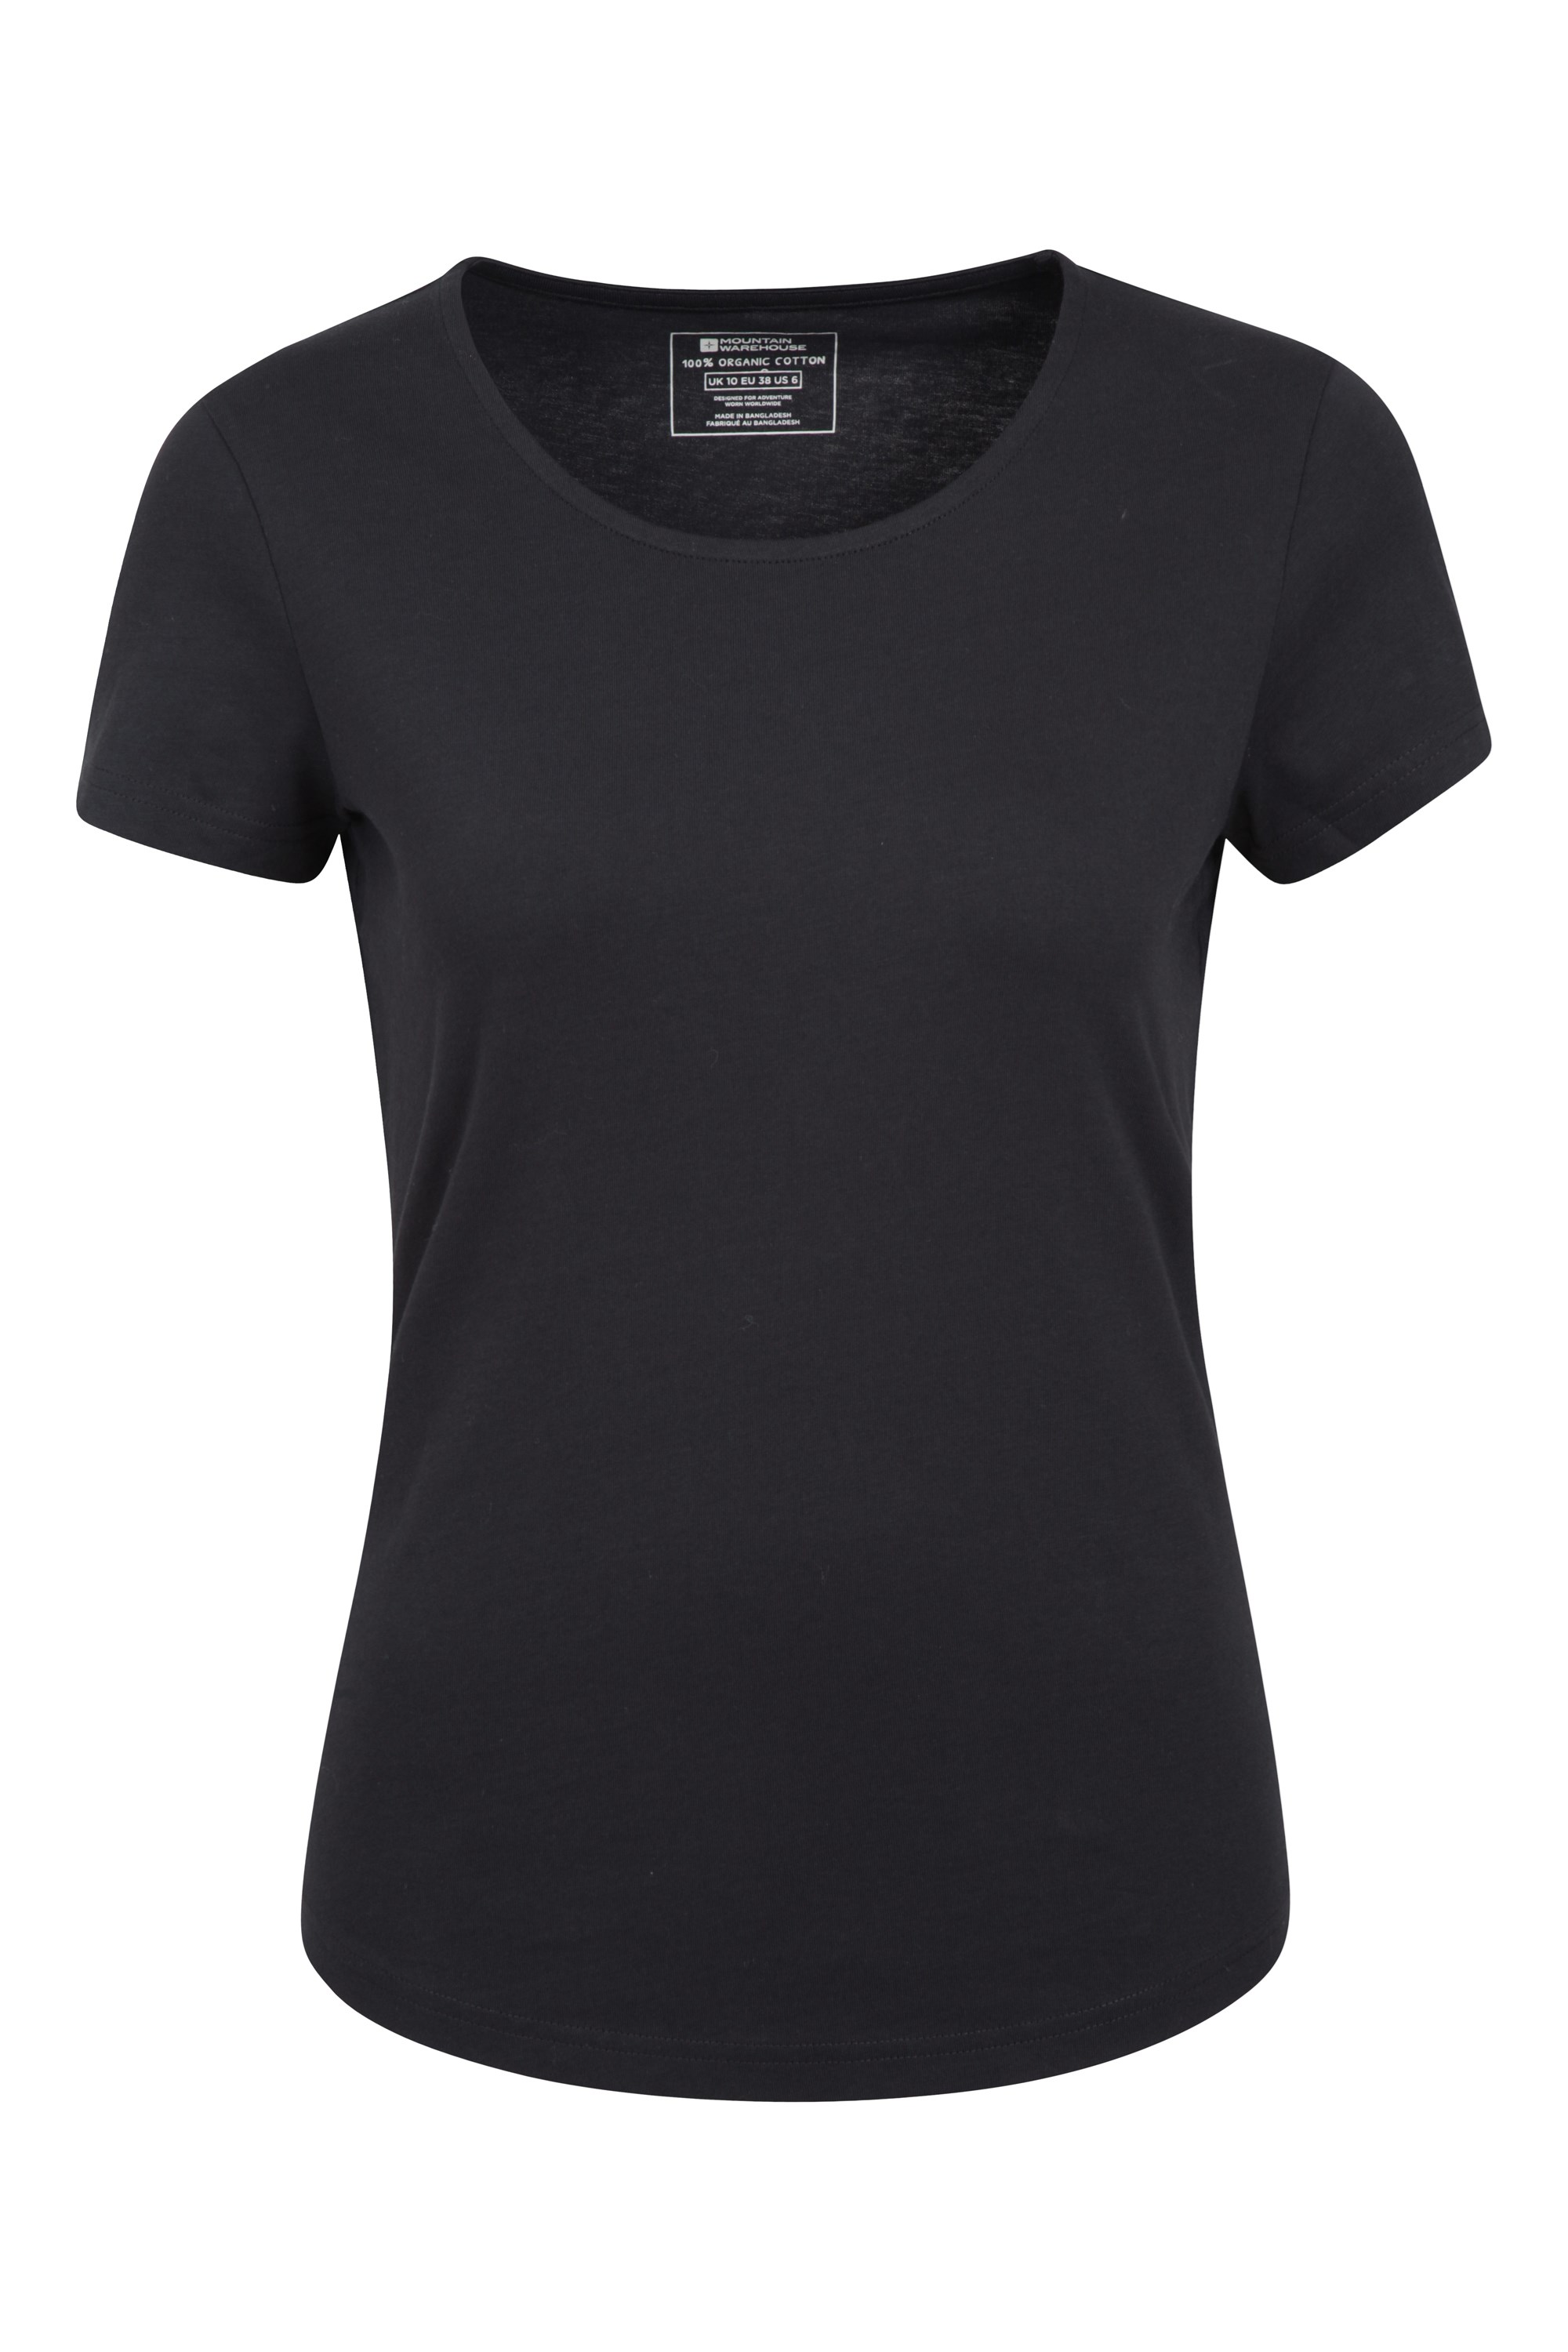 T-Shirt Organique Easy Femme - Noir